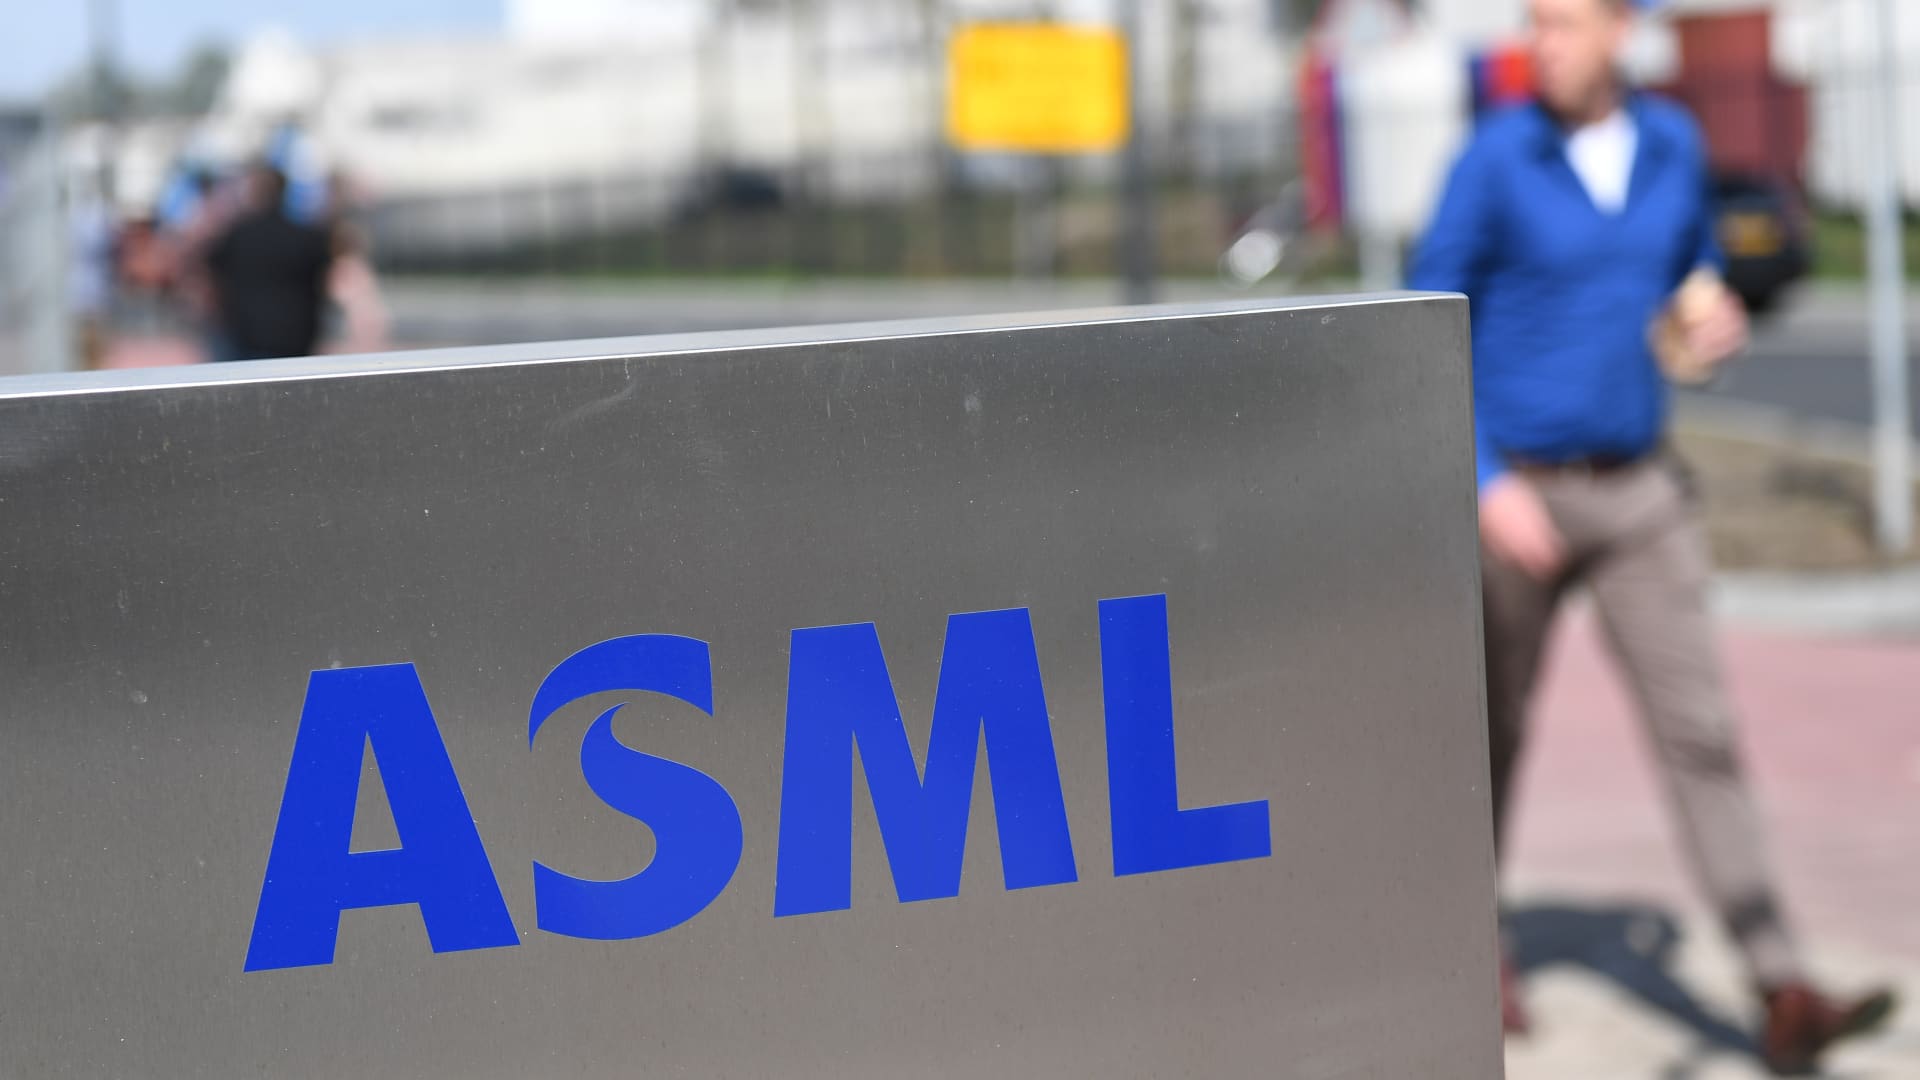 ASML Q3 收益超过； 看到美国芯片限制对中国的影响有限